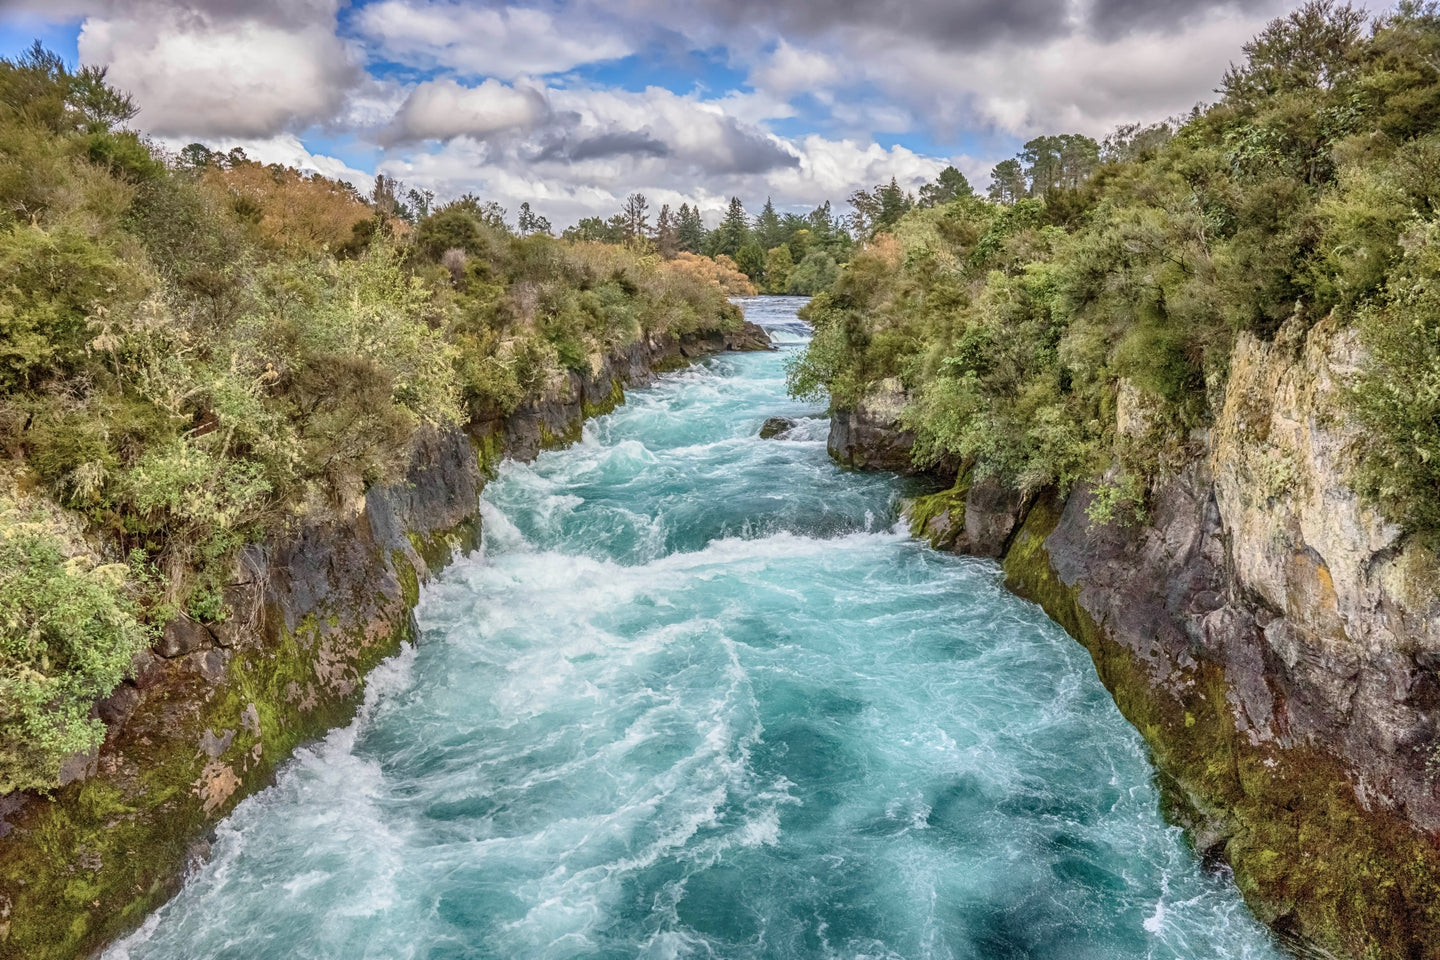 Downstream New Zealand by Jay McDonald